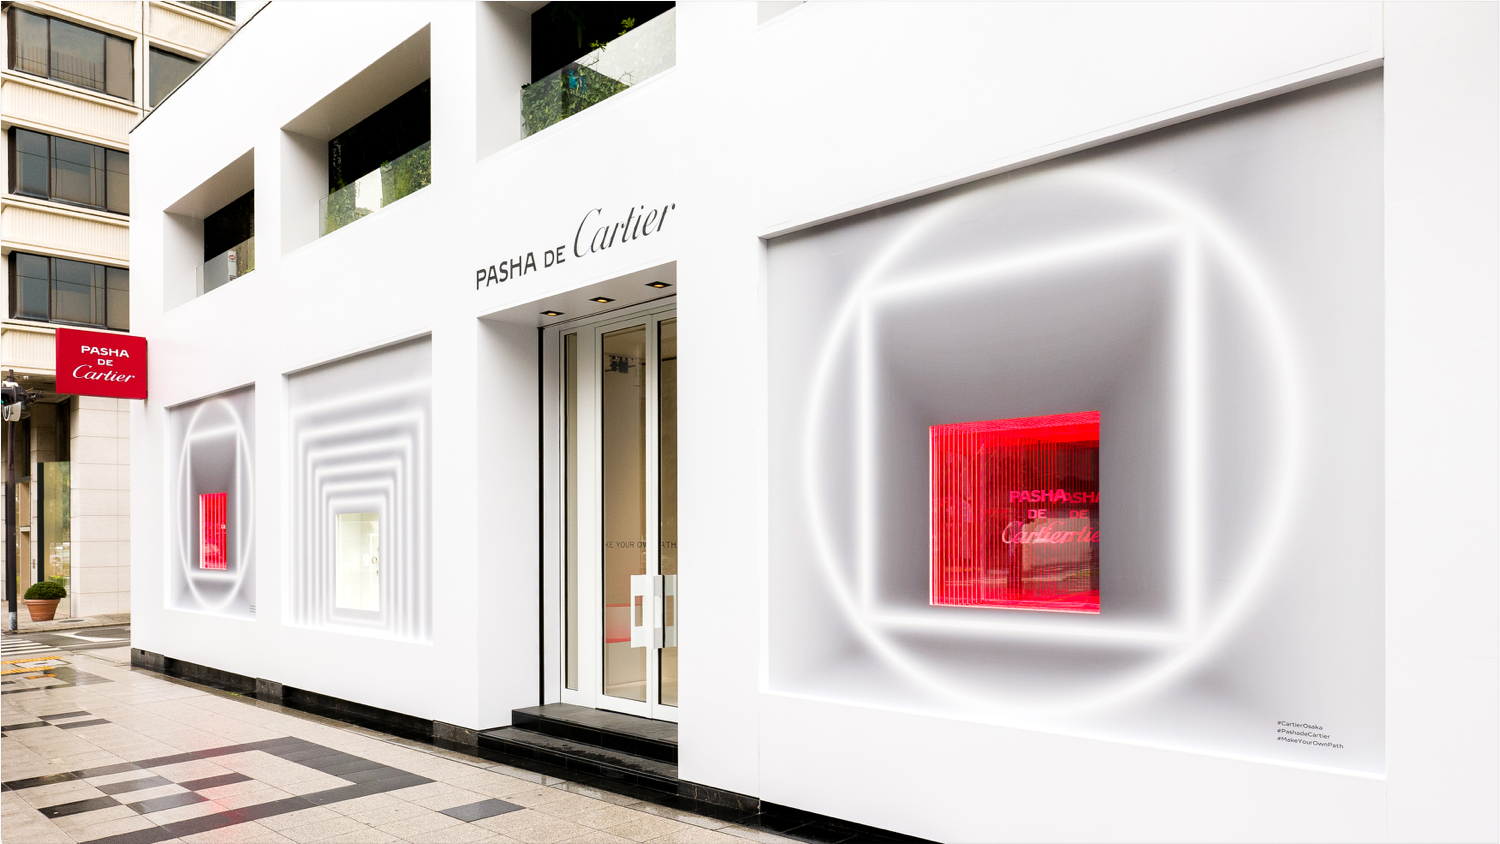 British Display Society - Clash de Cartier Pop Up shop located in